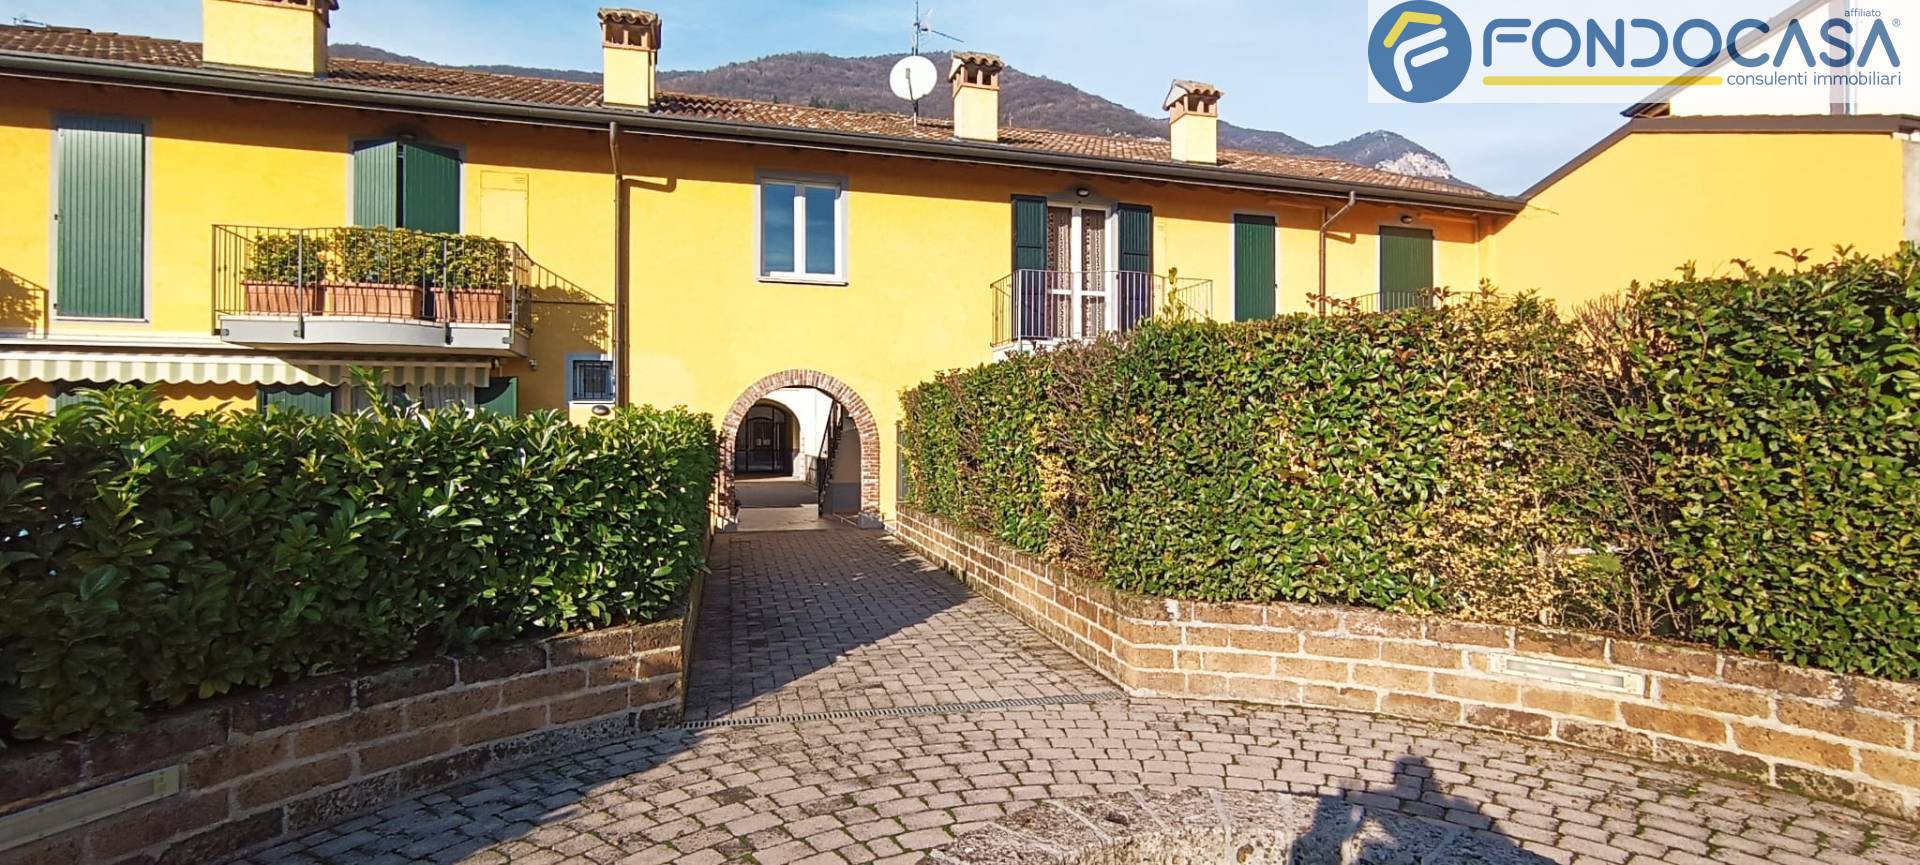 Appartamento in vendita a Villanuova sul Clisi, 2 locali, prezzo € 99.000 | PortaleAgenzieImmobiliari.it